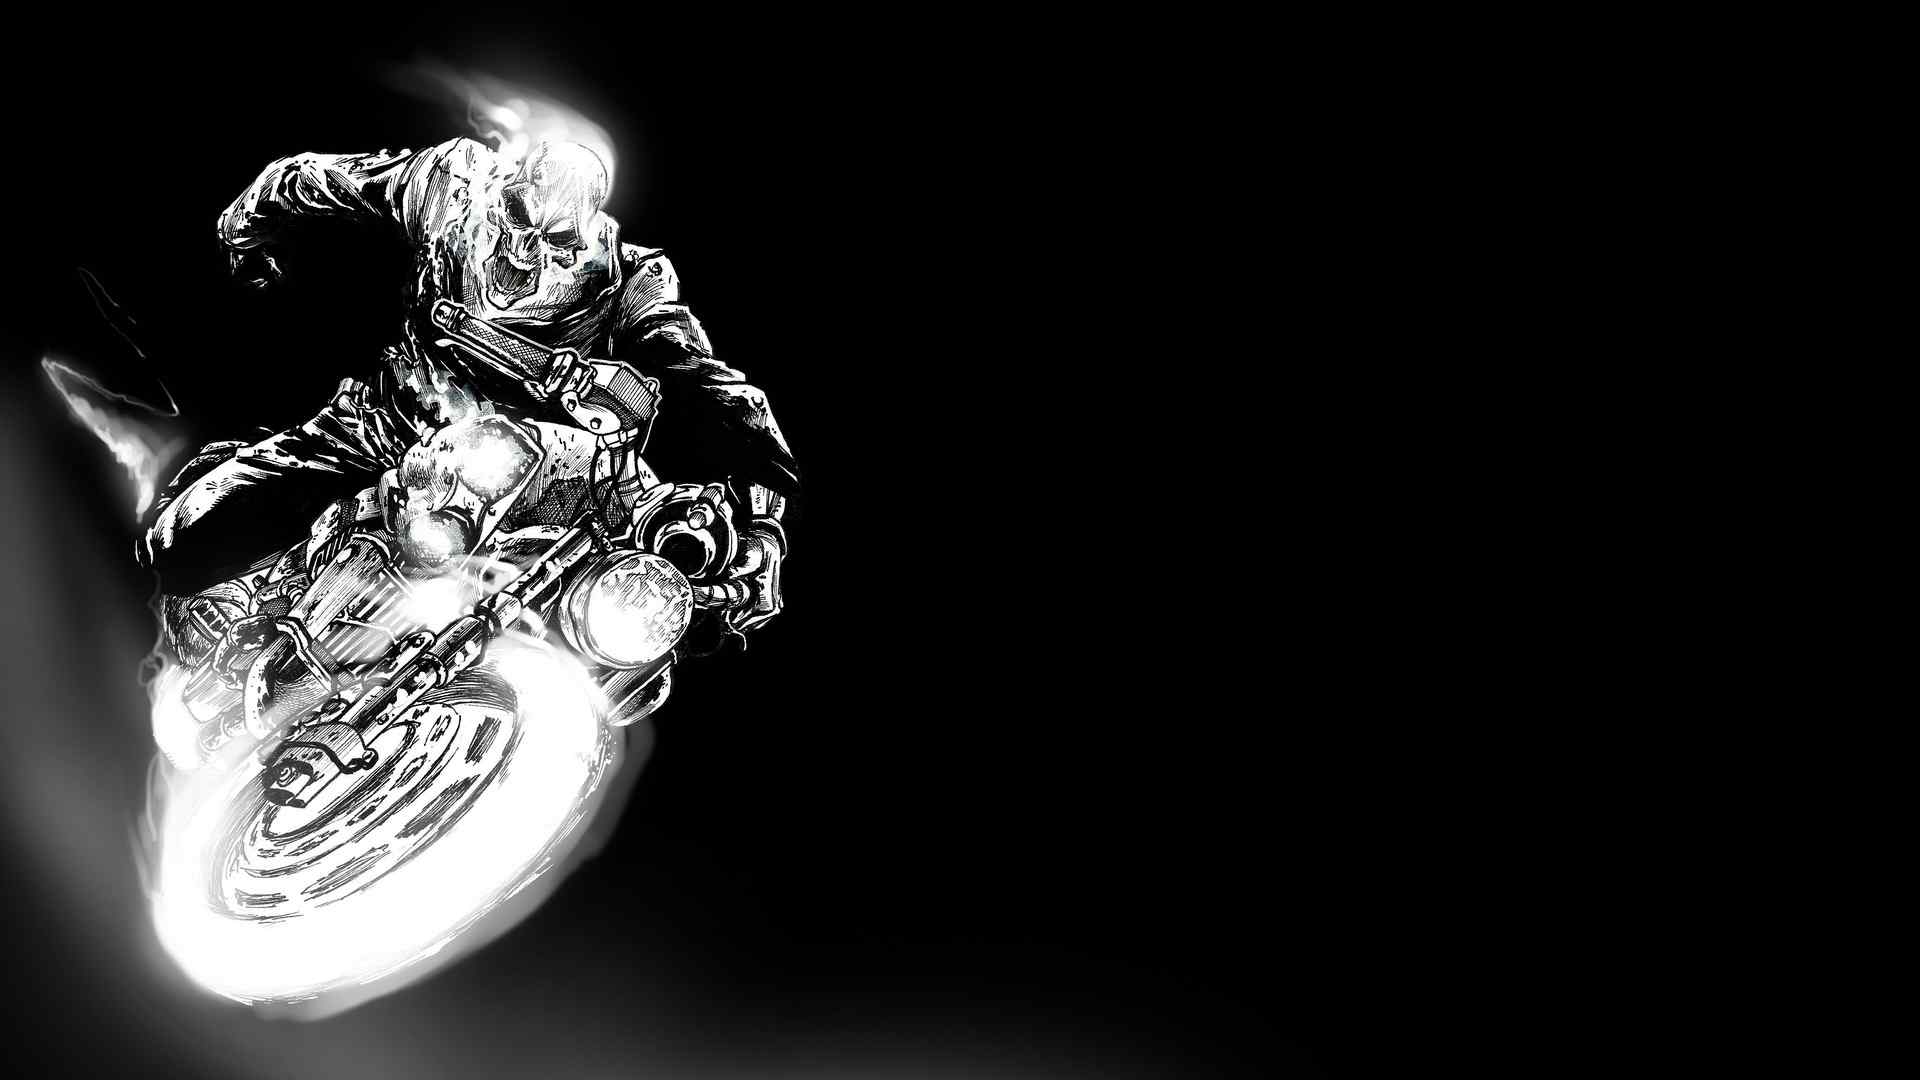 酷炫的骷髅摩托车黑白海报桌面壁纸